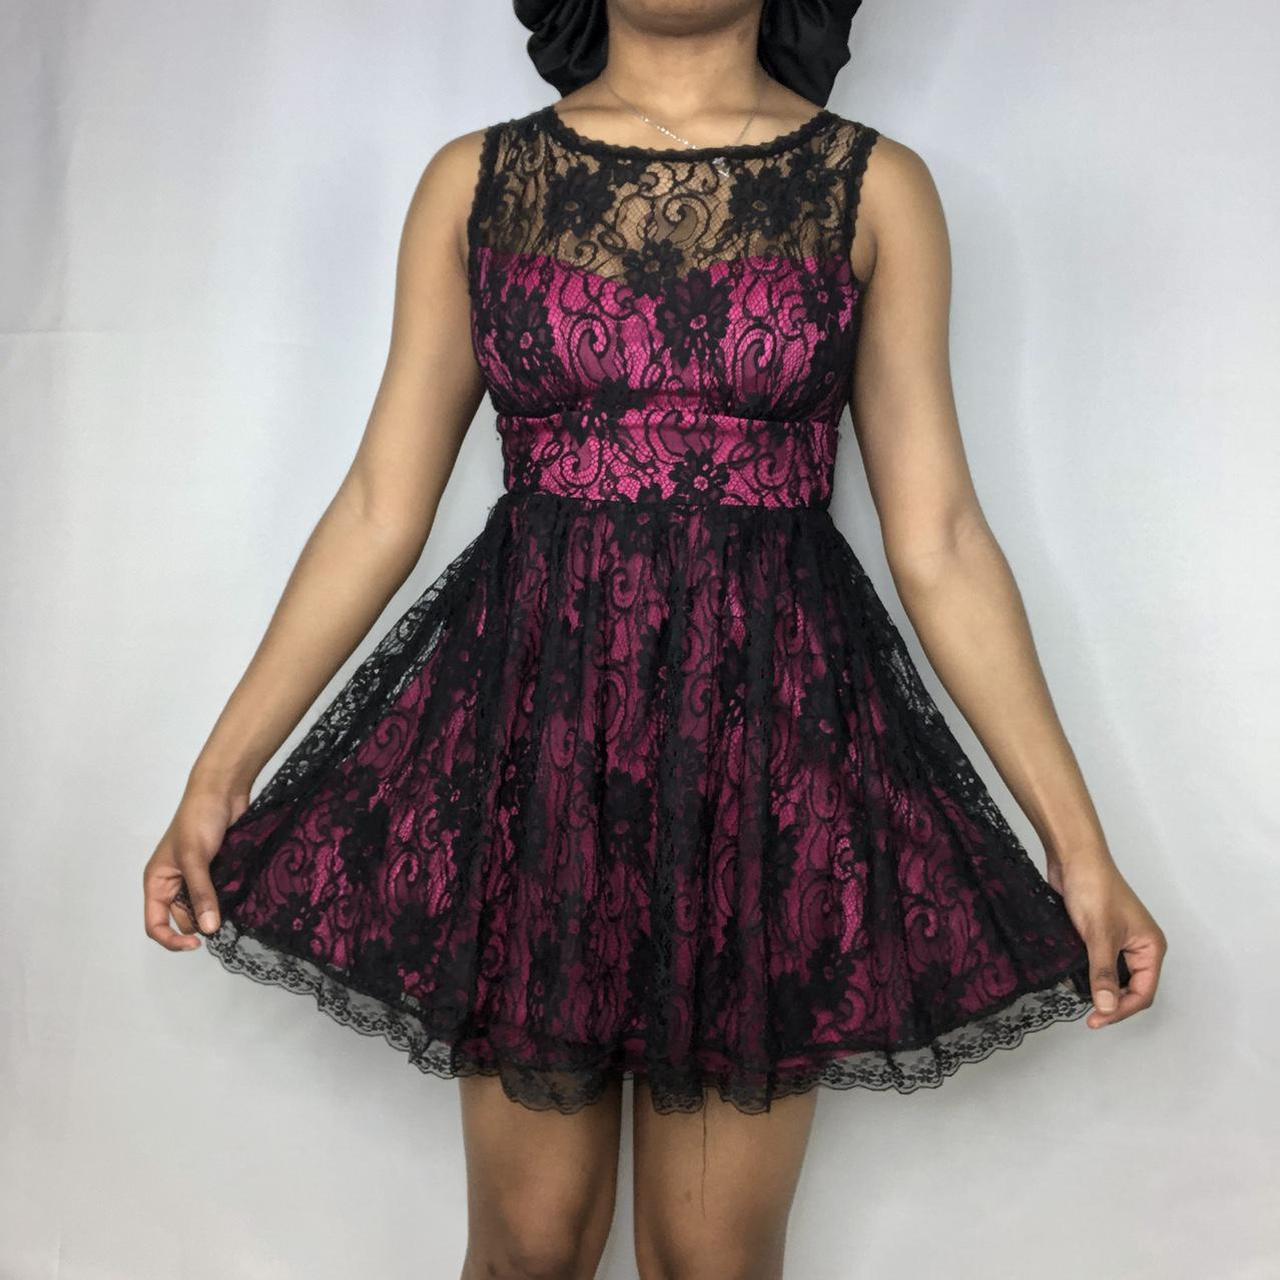 Product Image 1 - Black lace dress

Pink underlay sleeveless